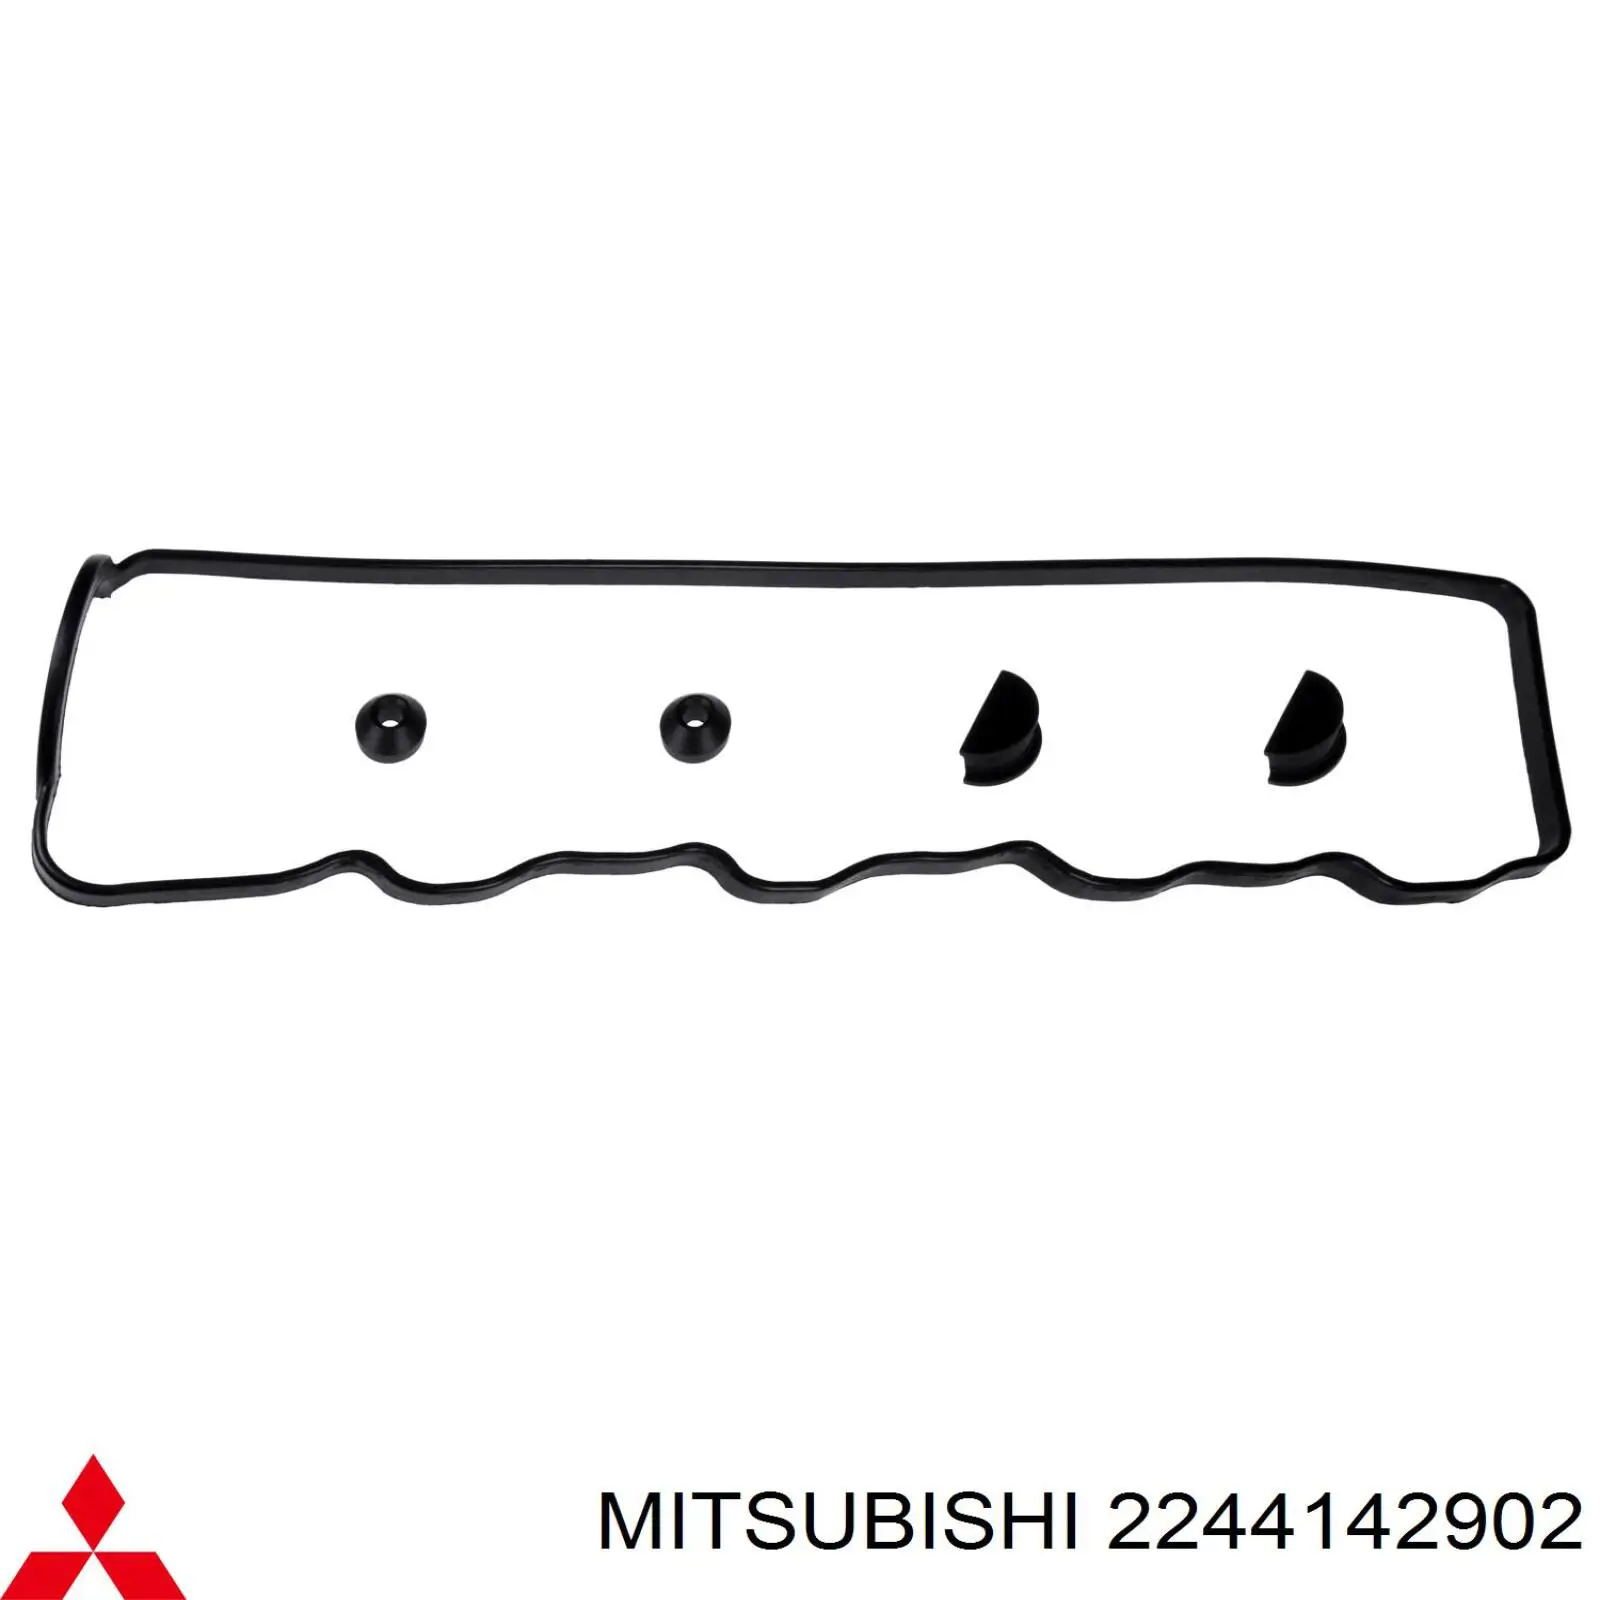 2244142902 Mitsubishi junta tapa de balancines